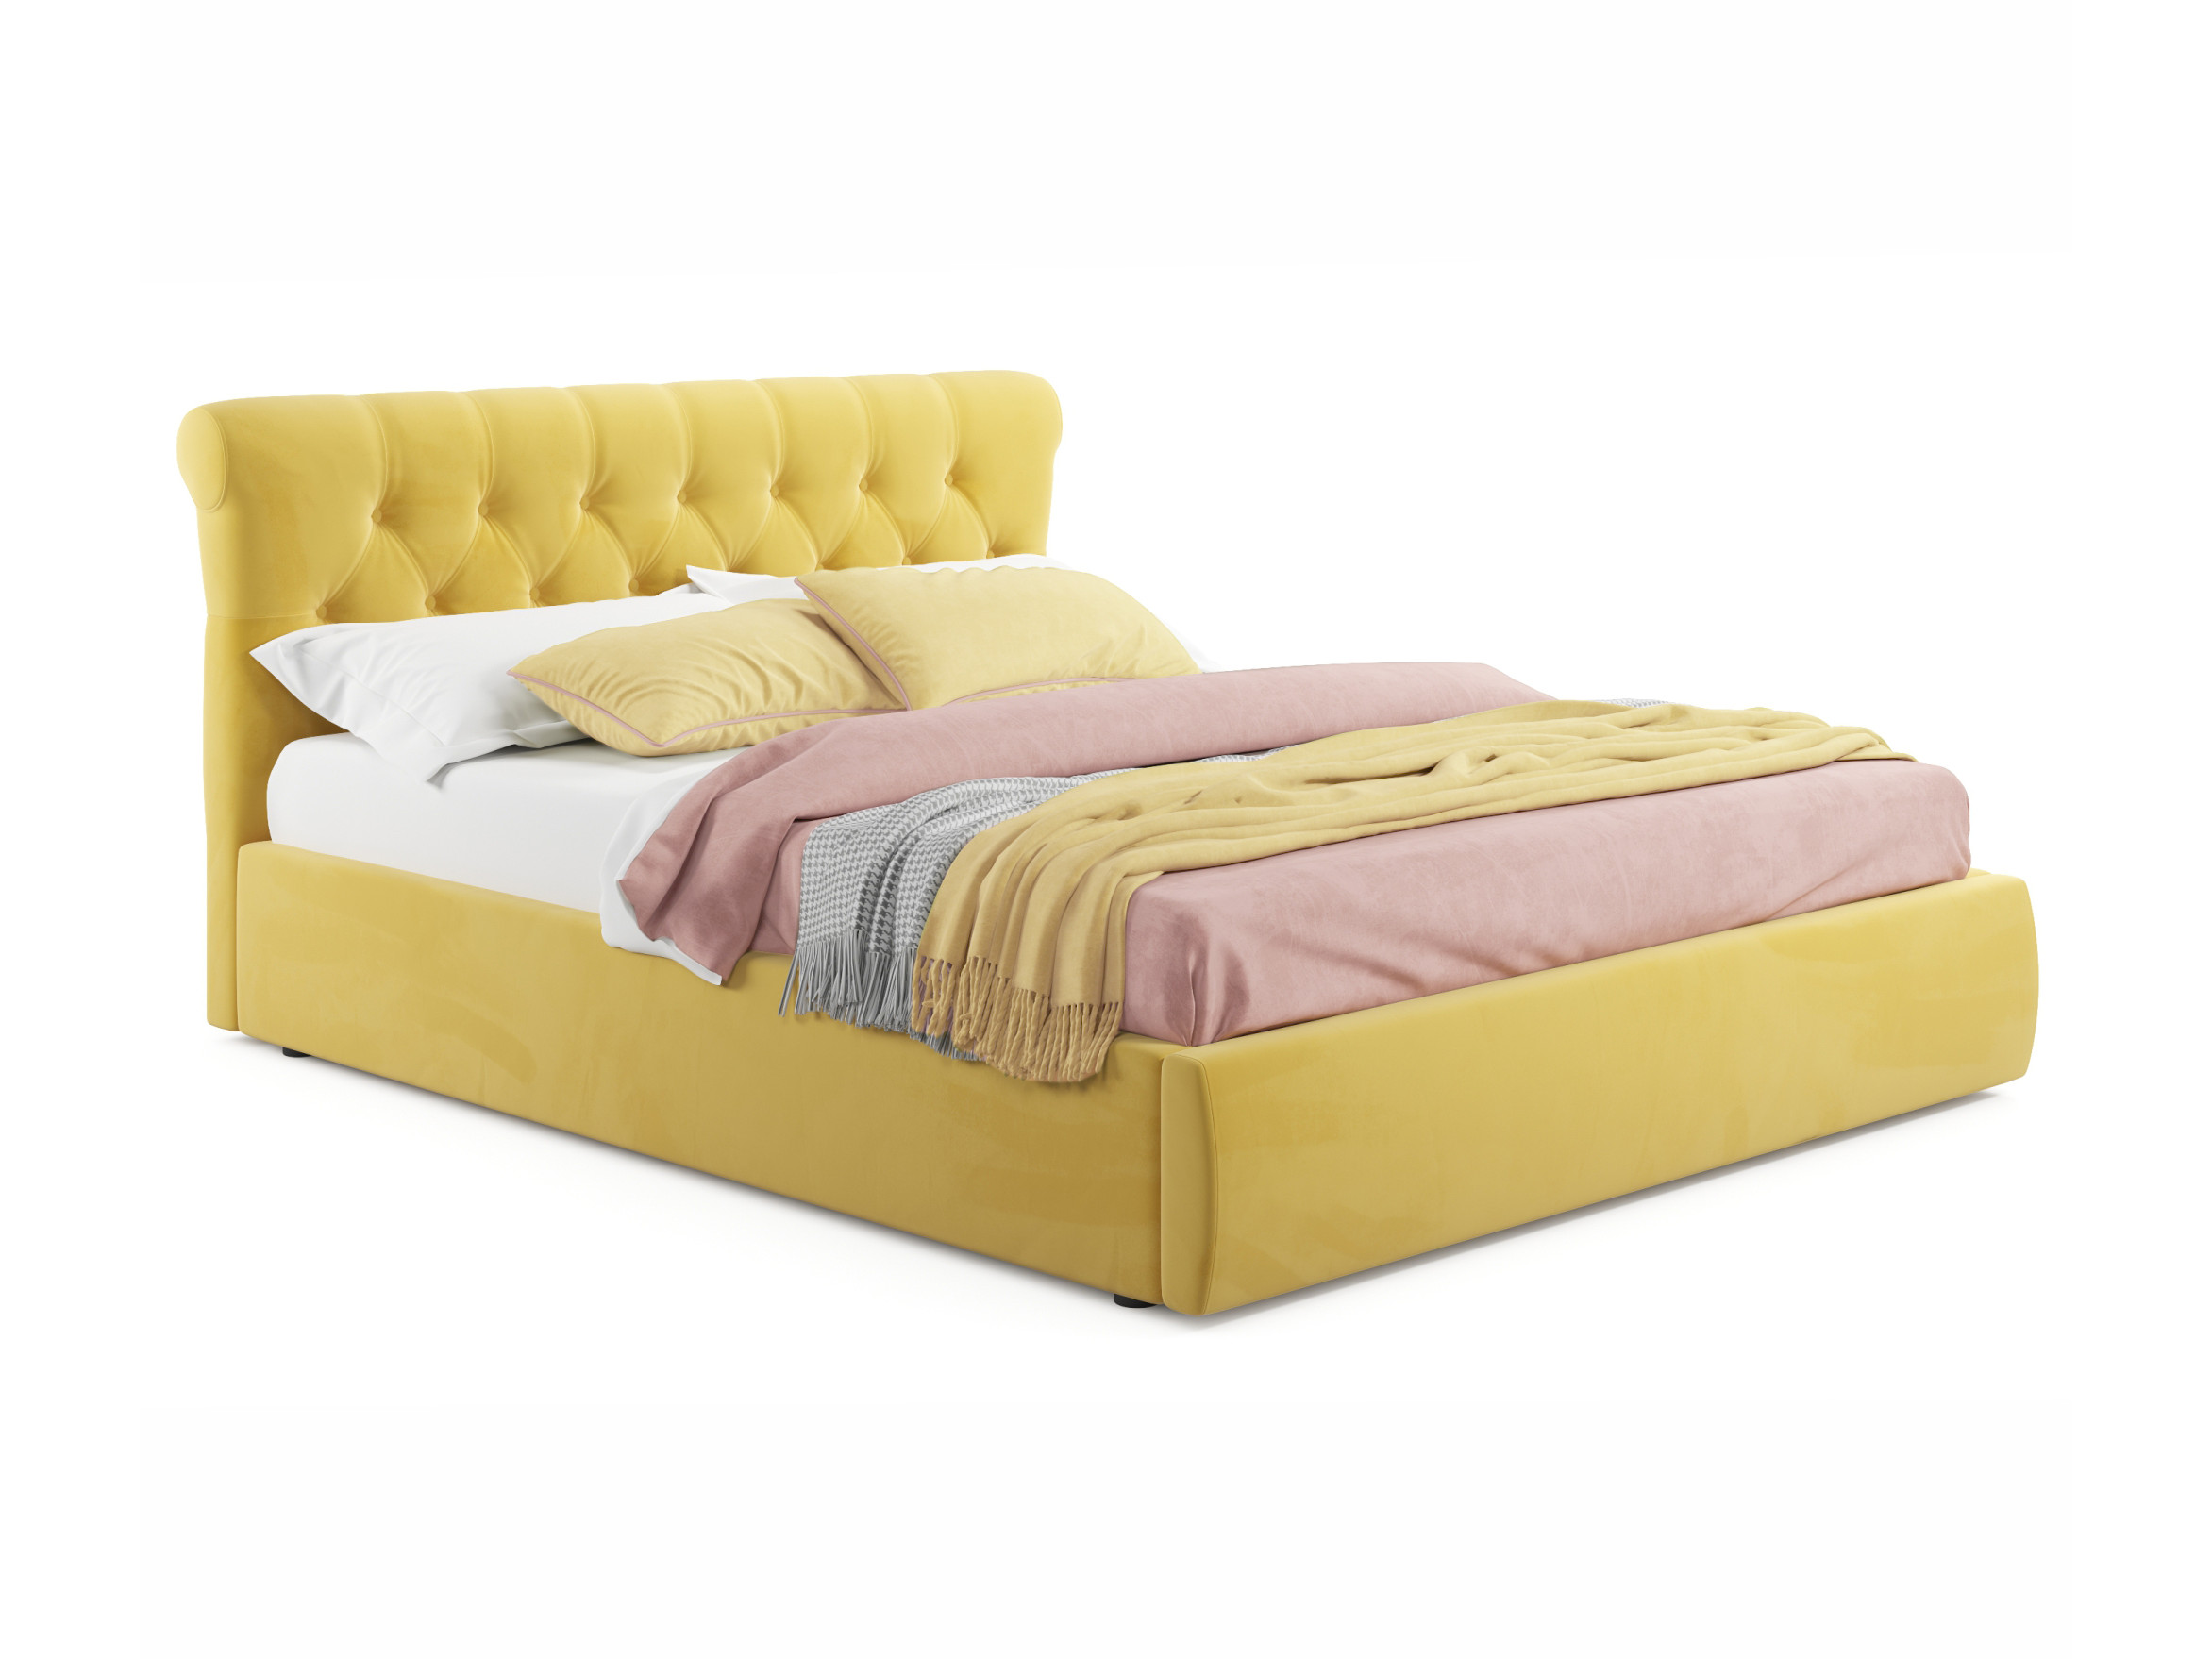 Мягкая кровать Ameli 1600 желтая с подъемным механизмом желтый, Желтый, Велюр, ДСП